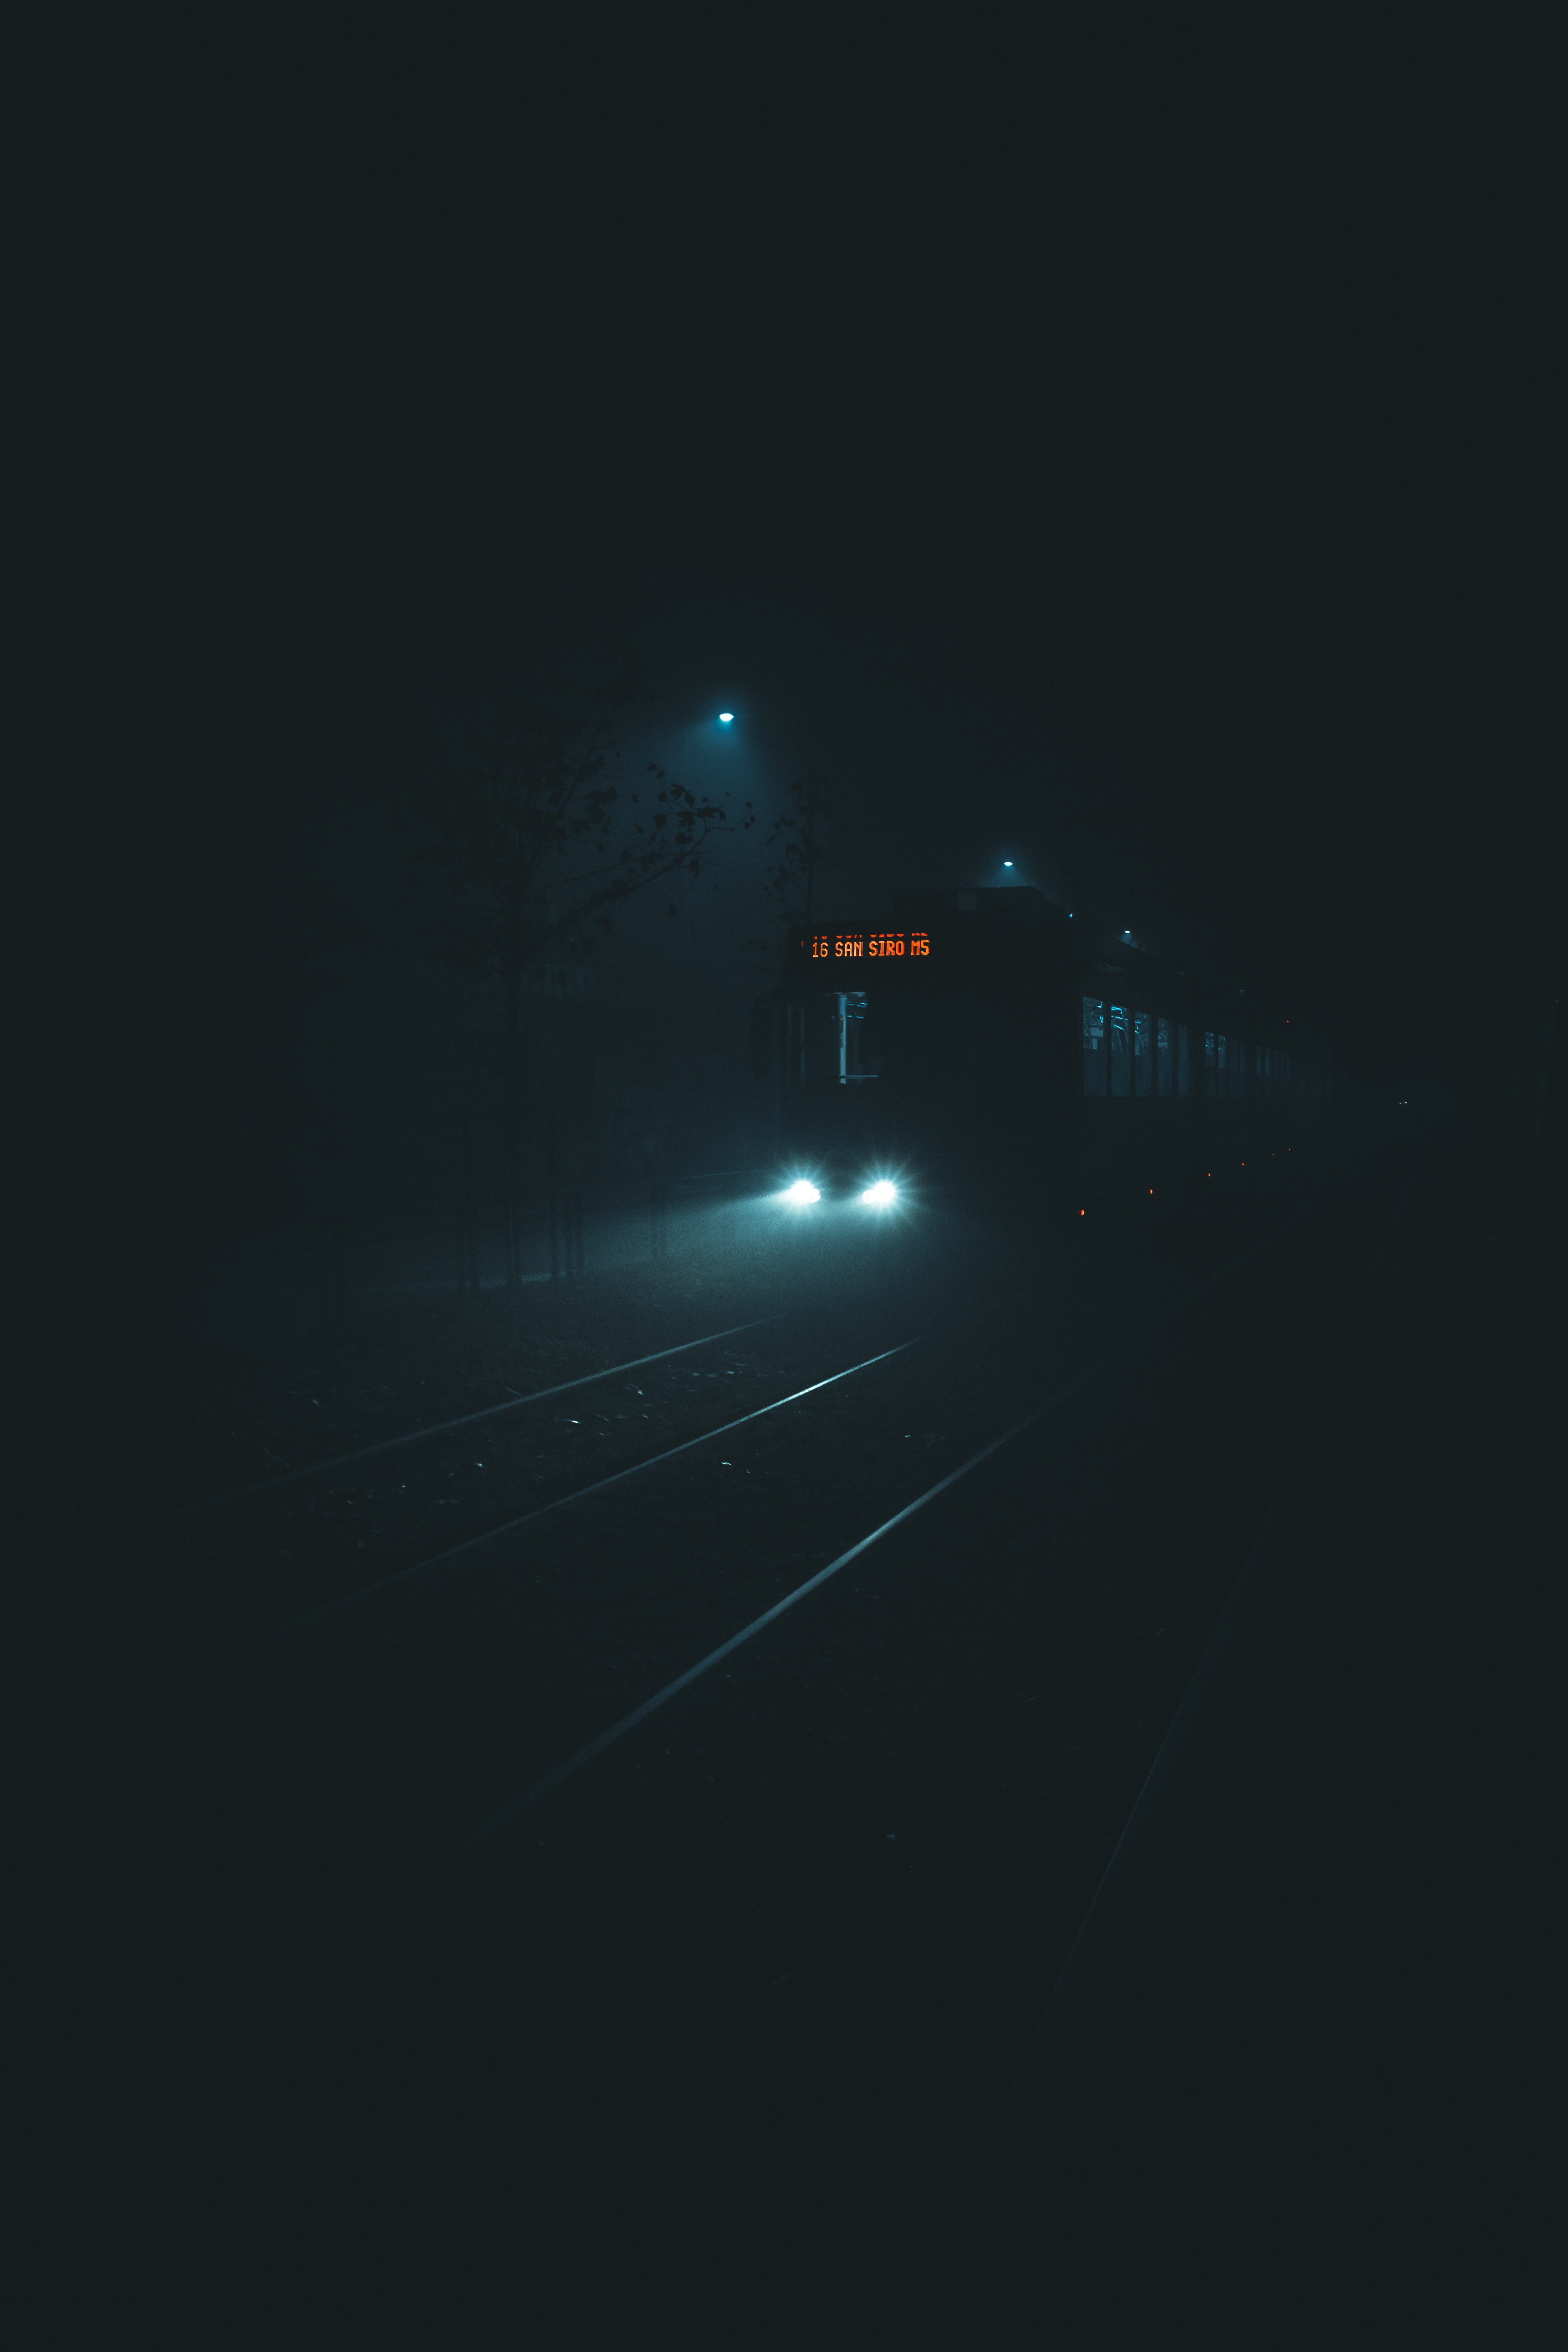 Free HD night, dark, darkness, train